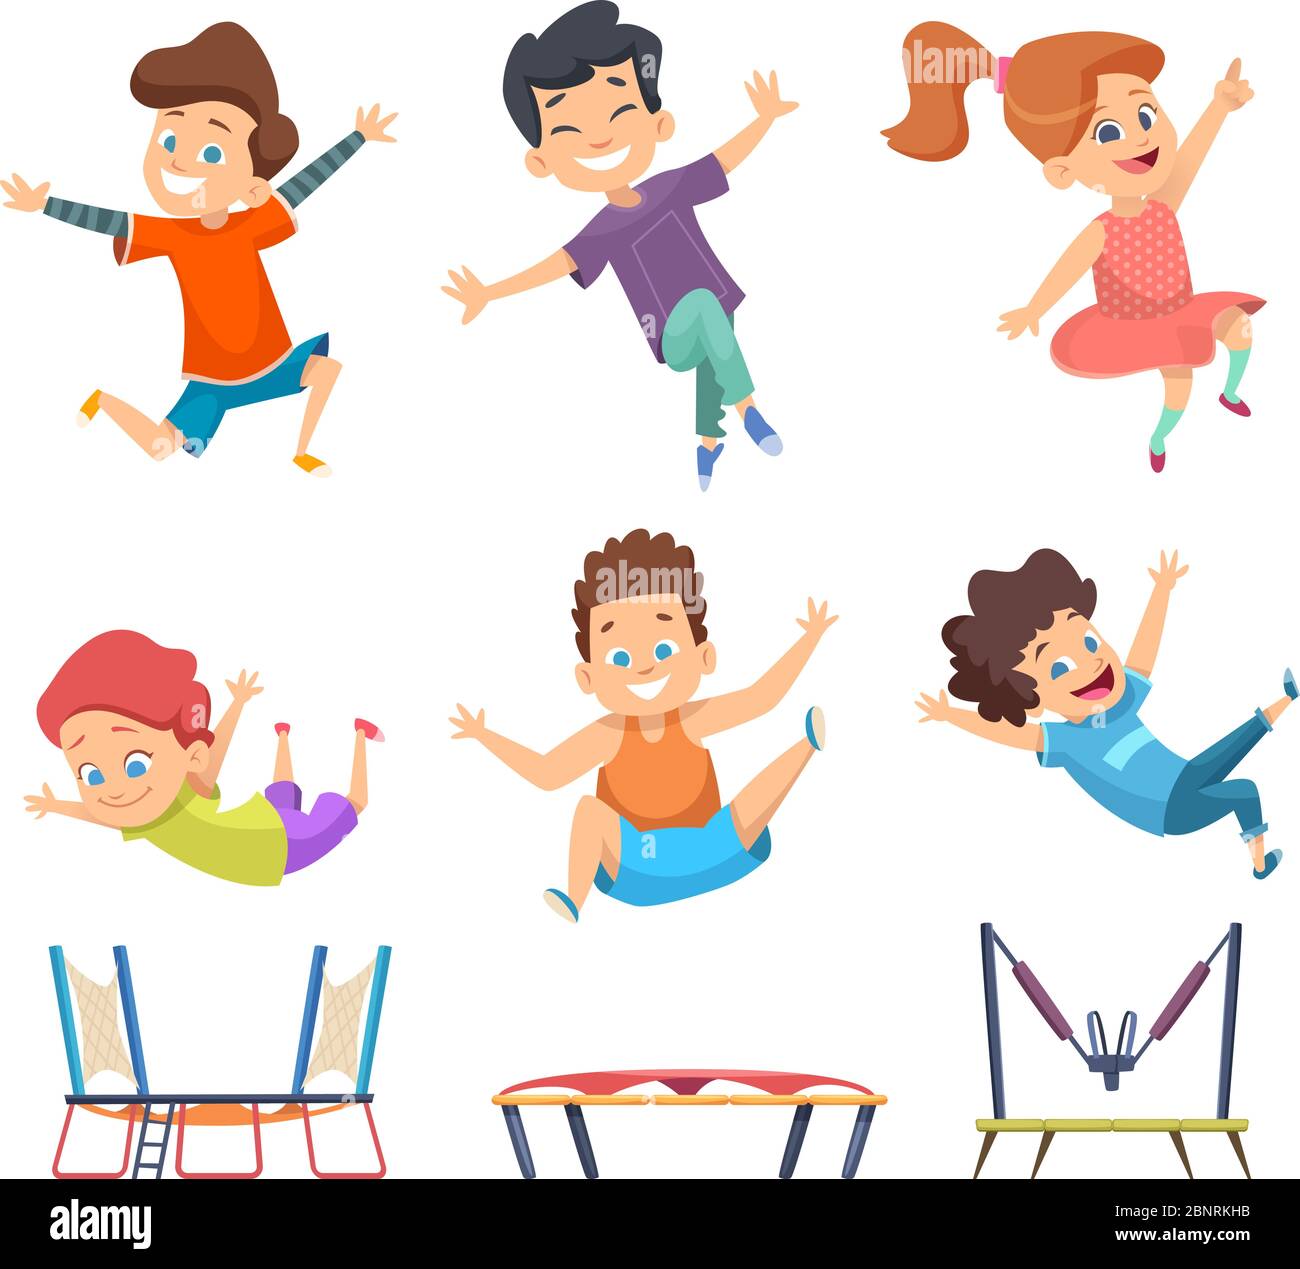 Trampolin für Kinder. Spielplatz Kinder aktiv springen Spiele Vektor-Figuren im Cartoon-Stil Stock Vektor